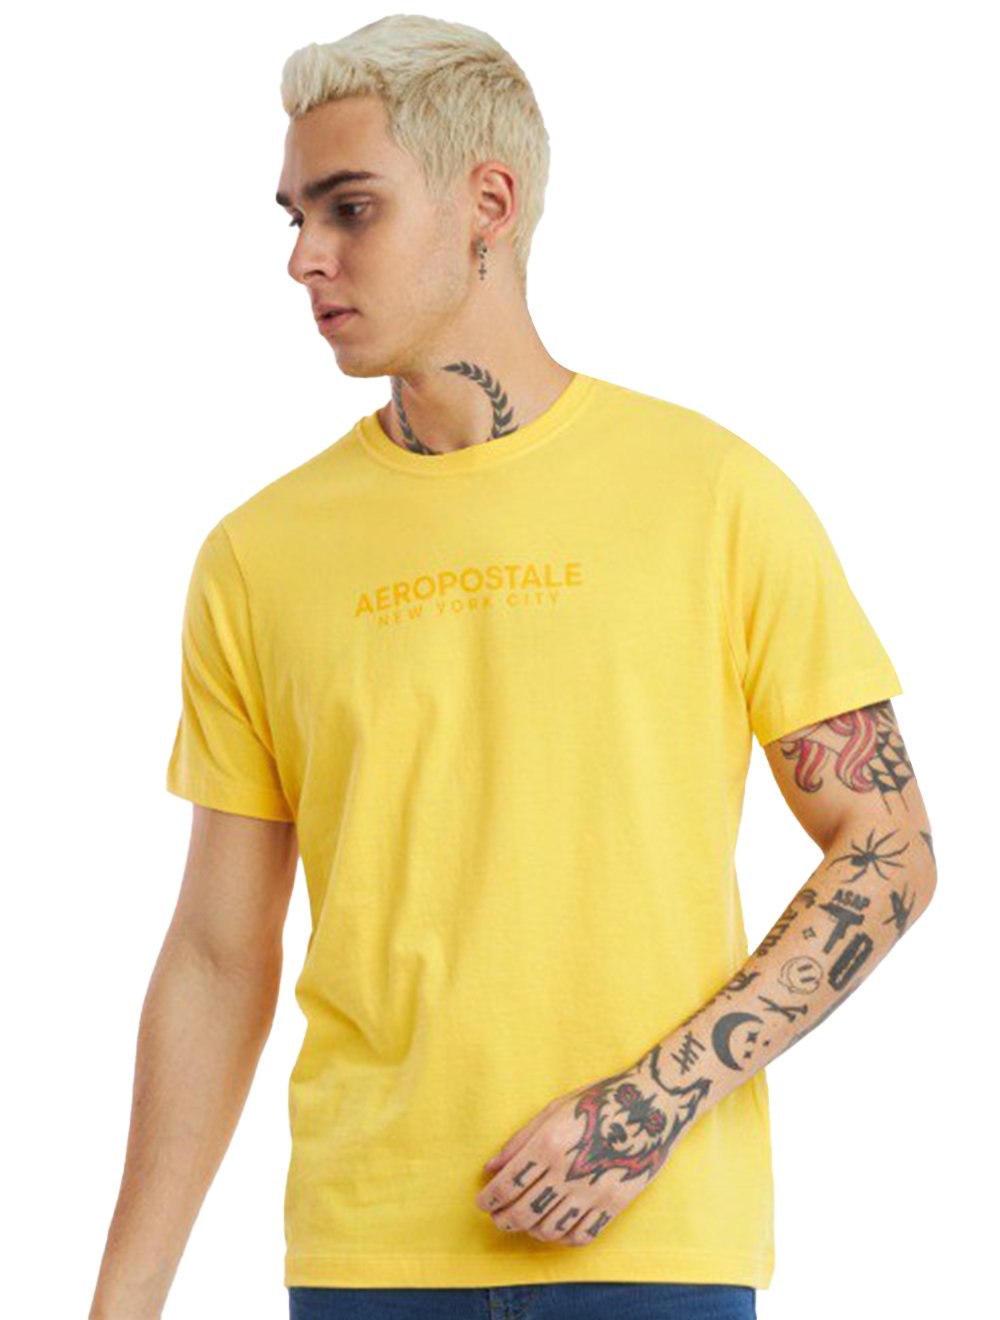 Camiseta Aeropostale Masculina Colors New York City Amarela